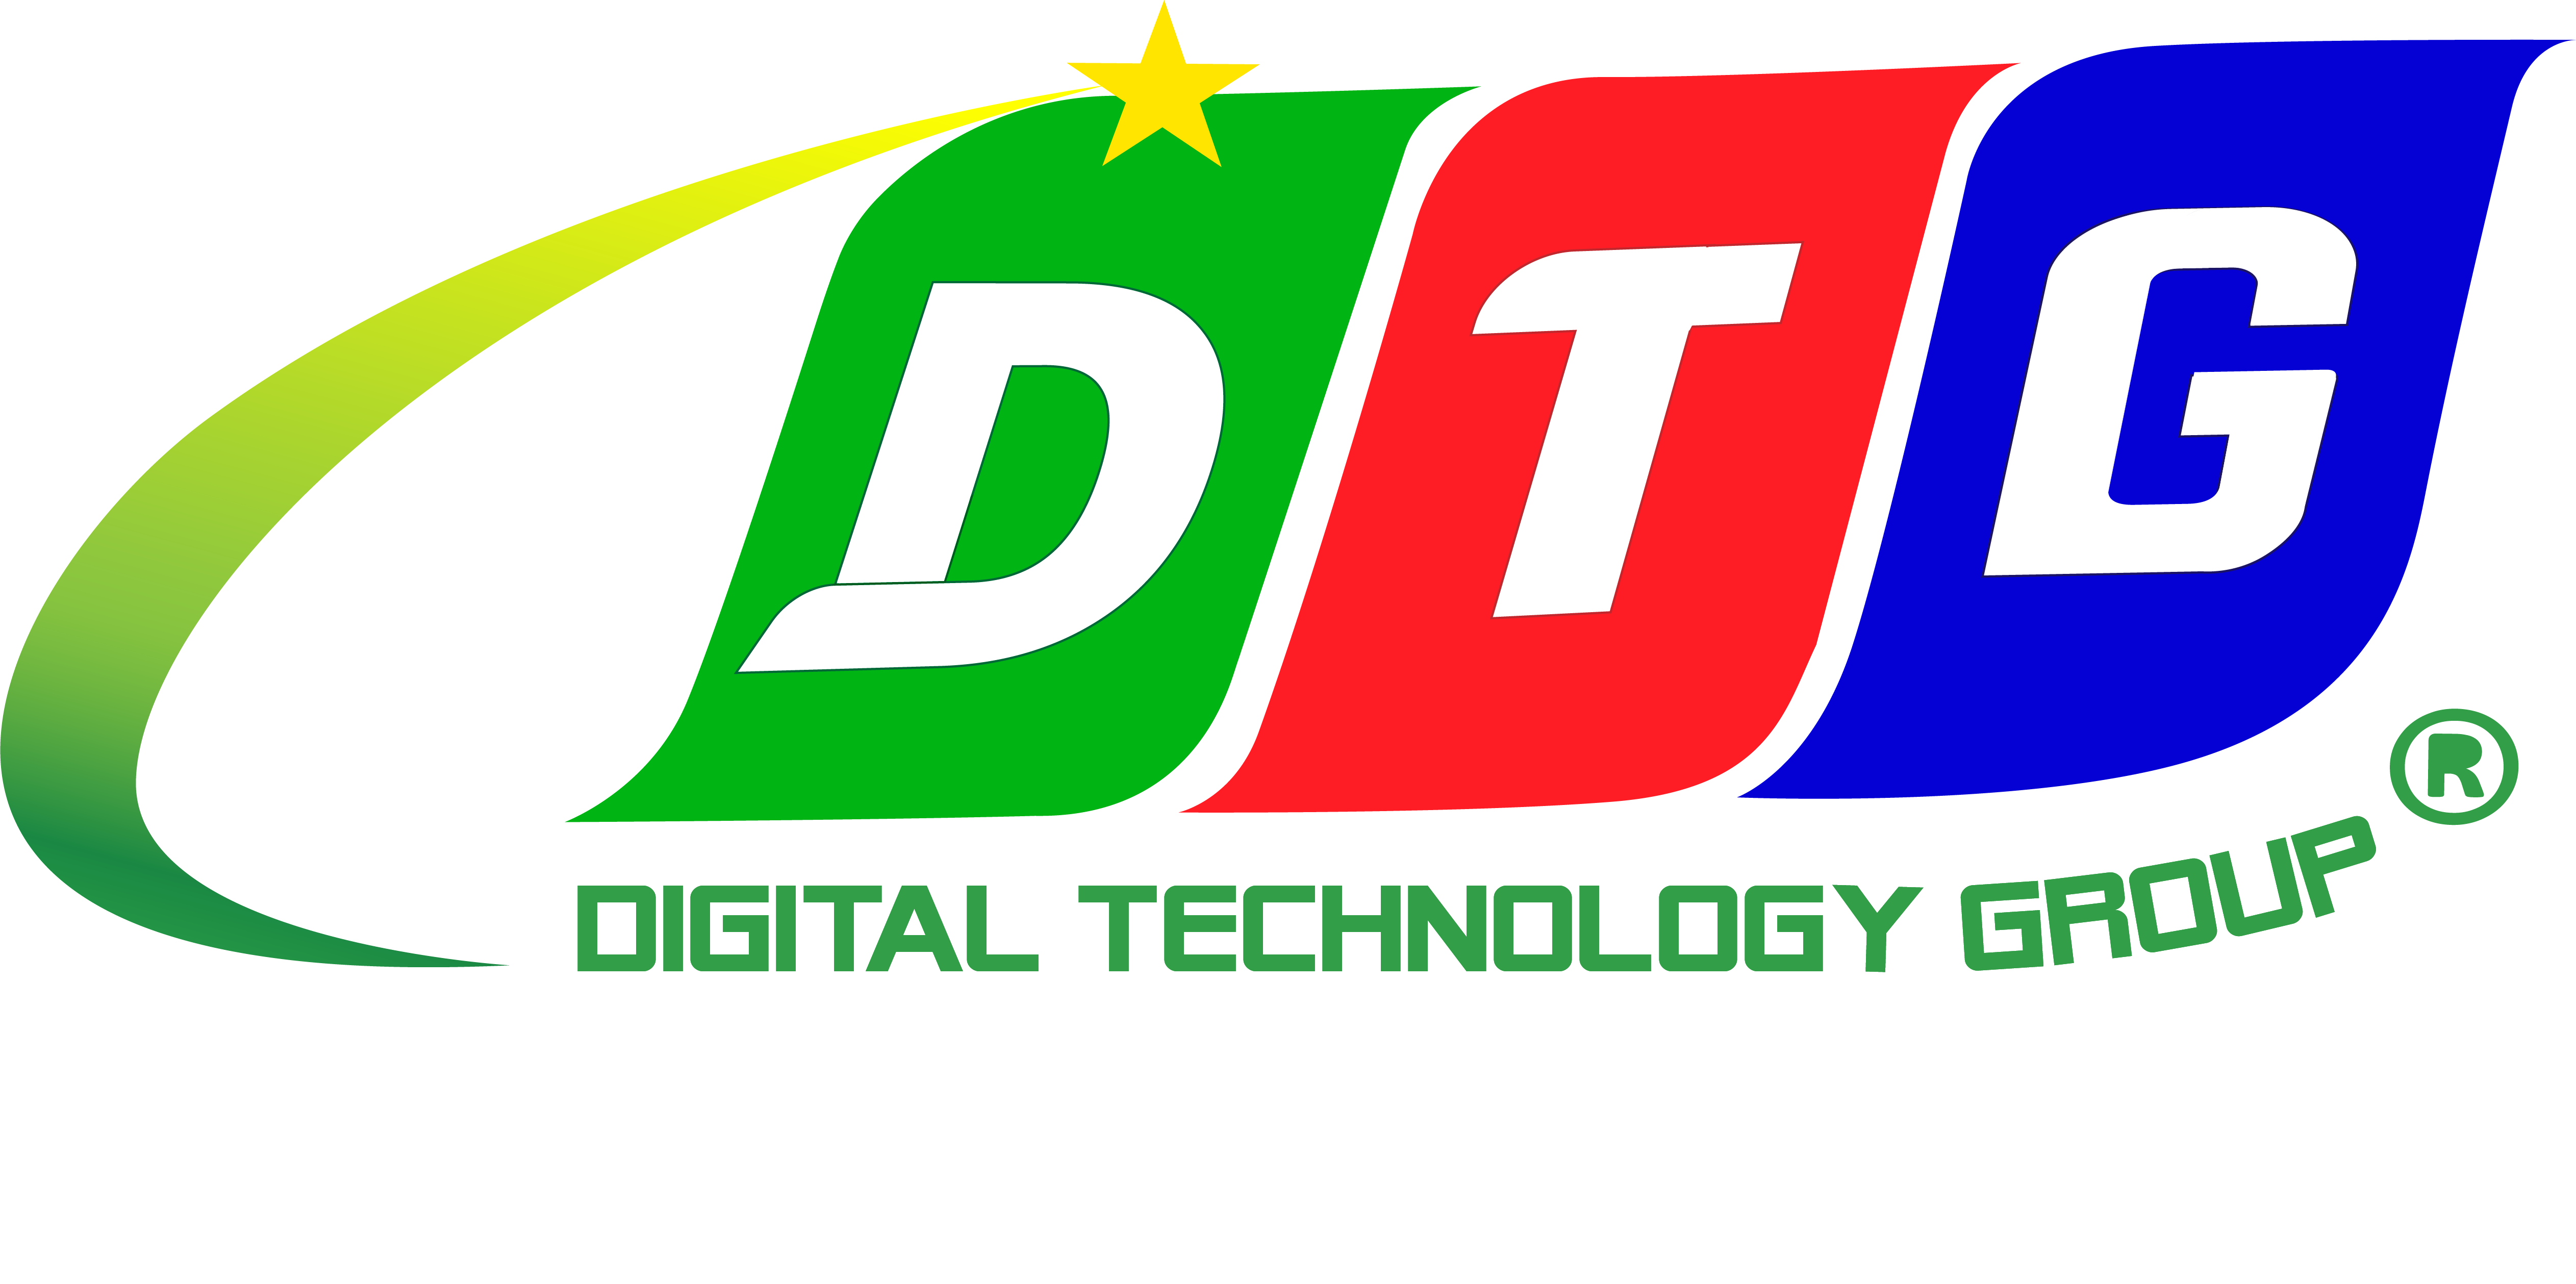 CÔNG TY CỔ PHẦN CÔNG NGHỆ DTG logo